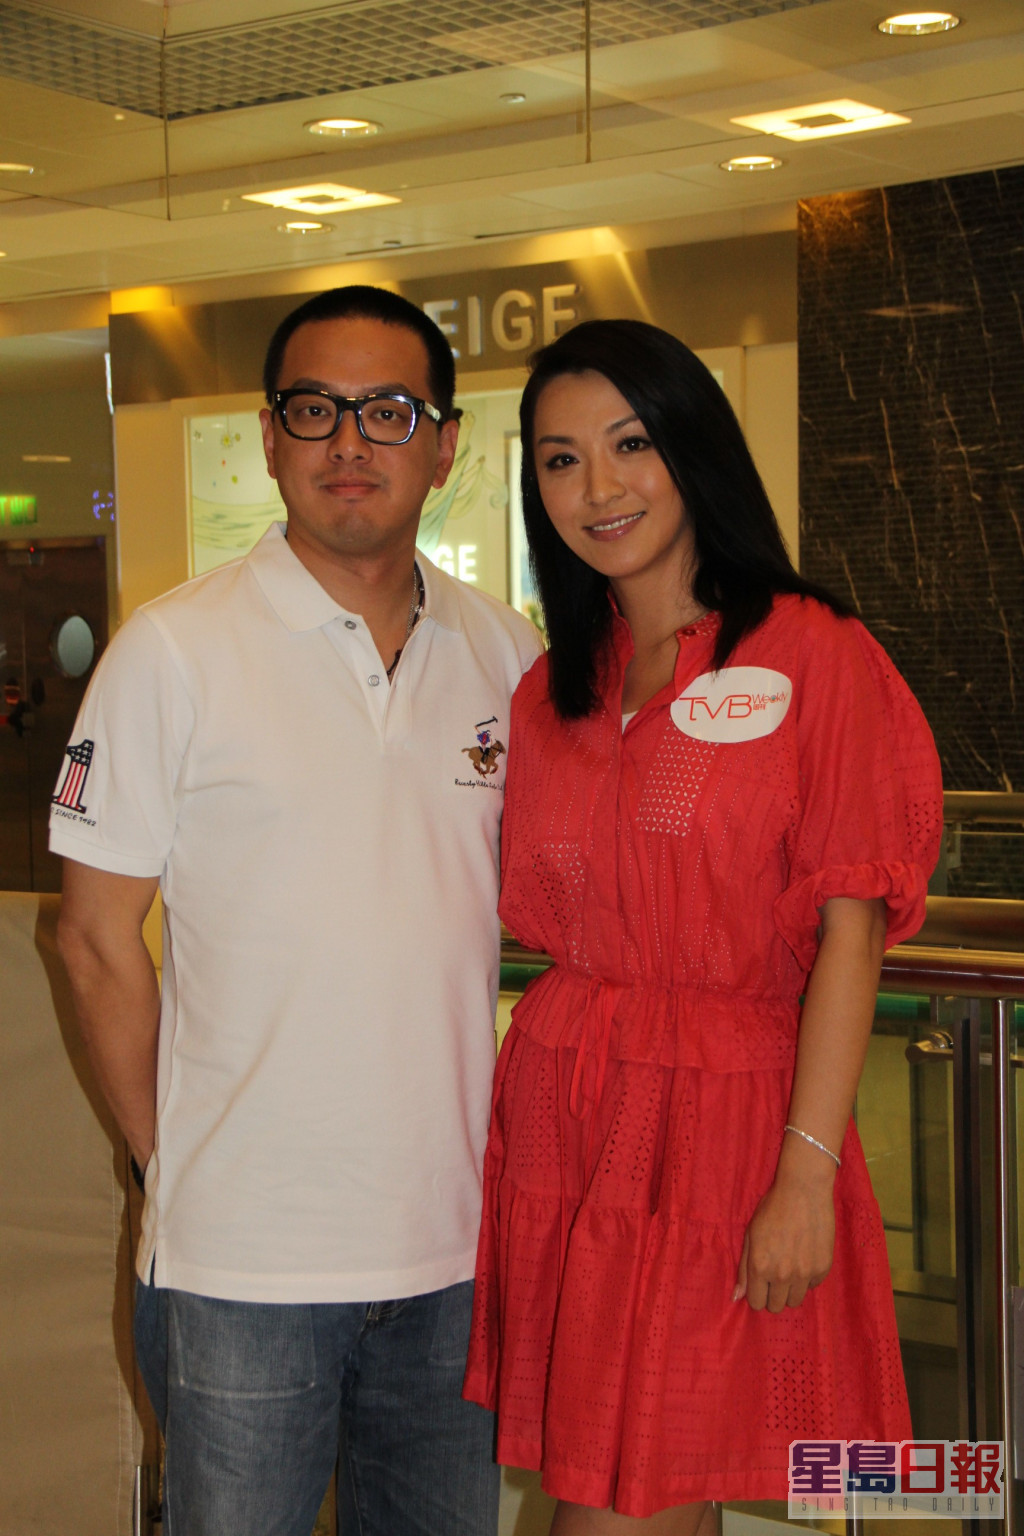 陈炜于2008年与比自己年轻3年的台湾富商颜志行结婚并宣布息影。